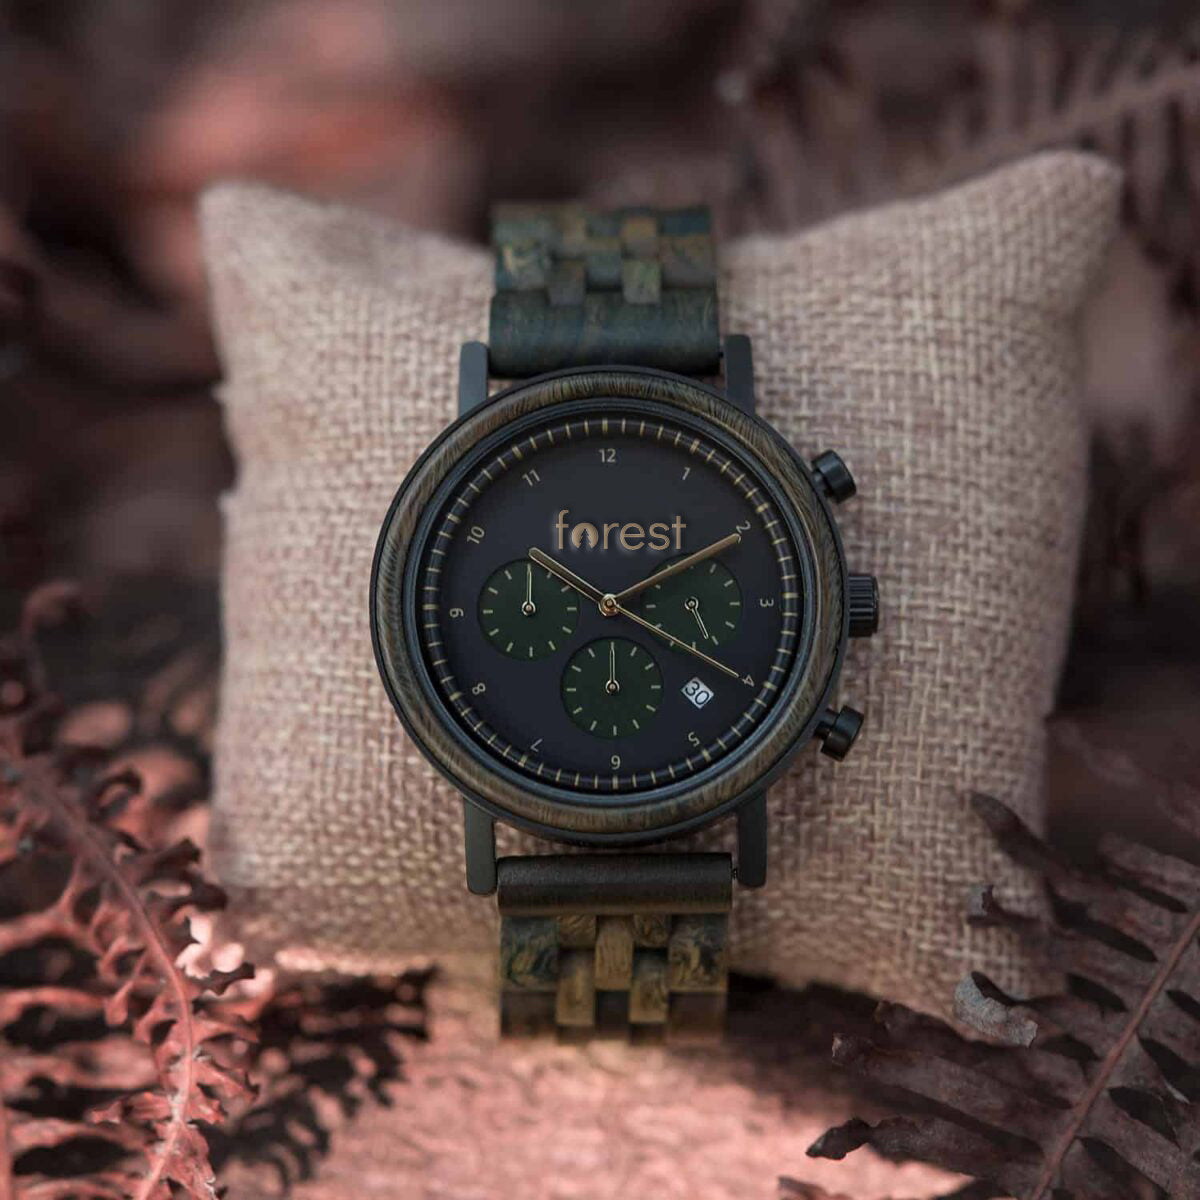 Hunter wooden watch on a watch pillow